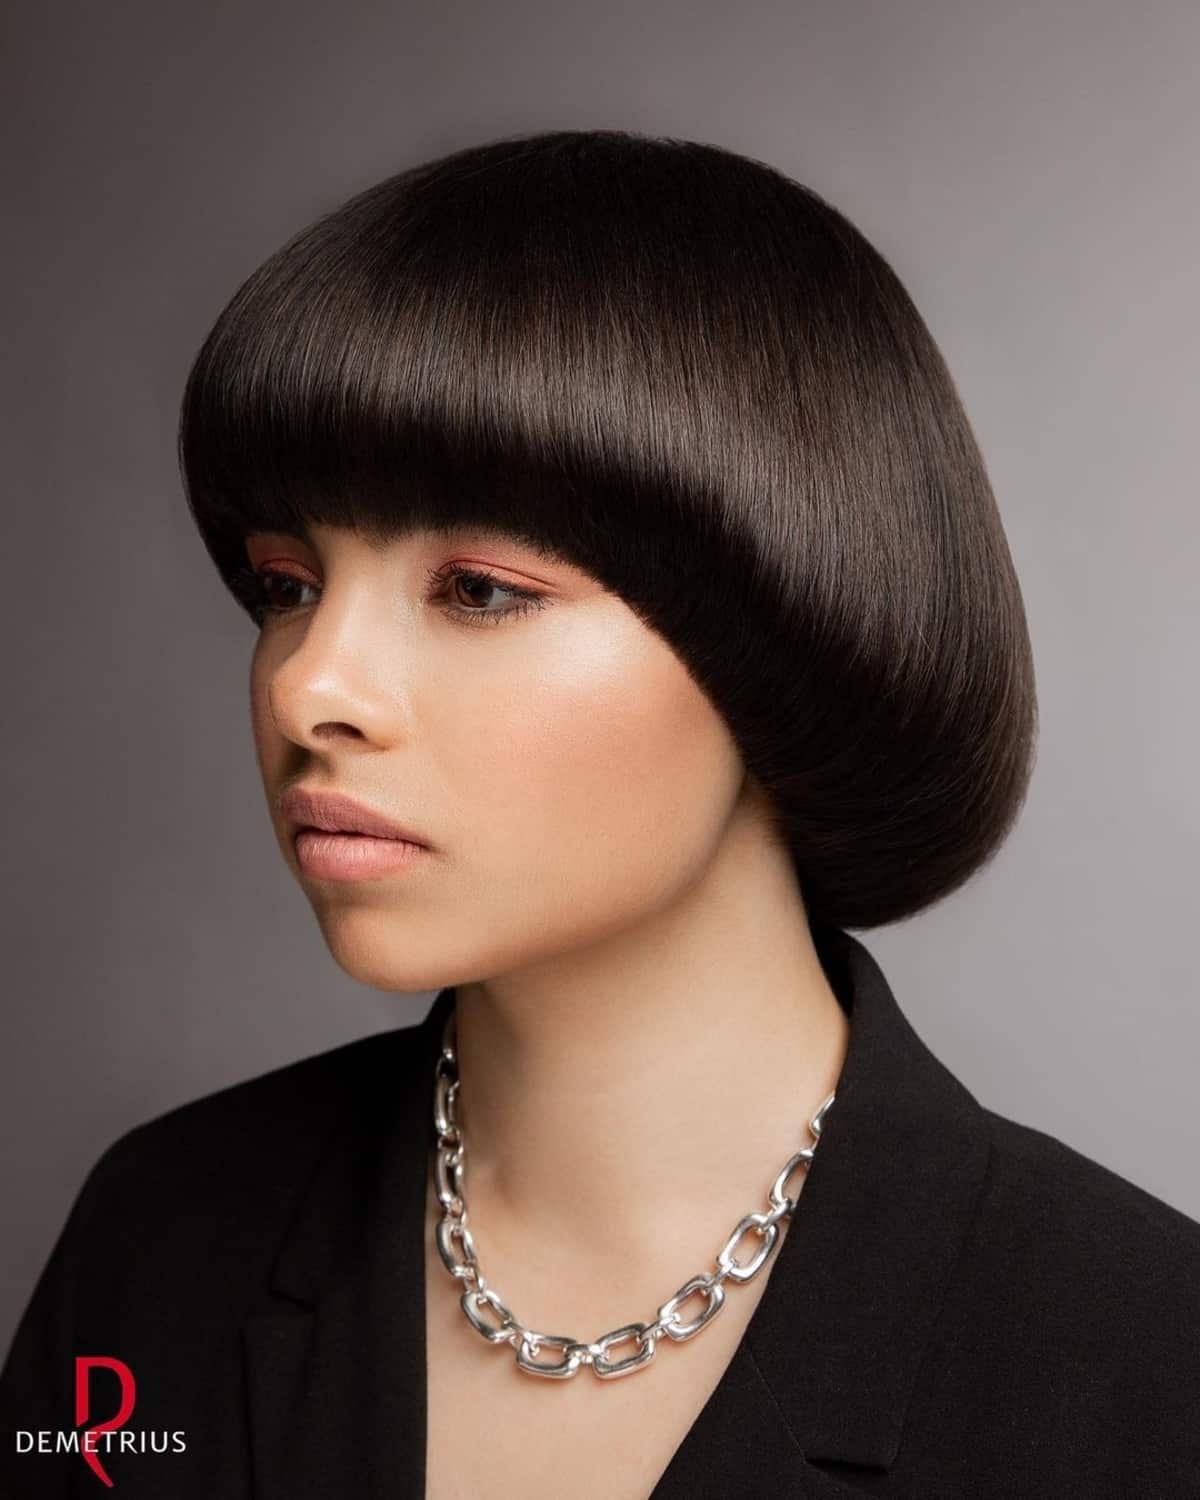 16 Modern Bowl Cut Haircut Ideas for Women